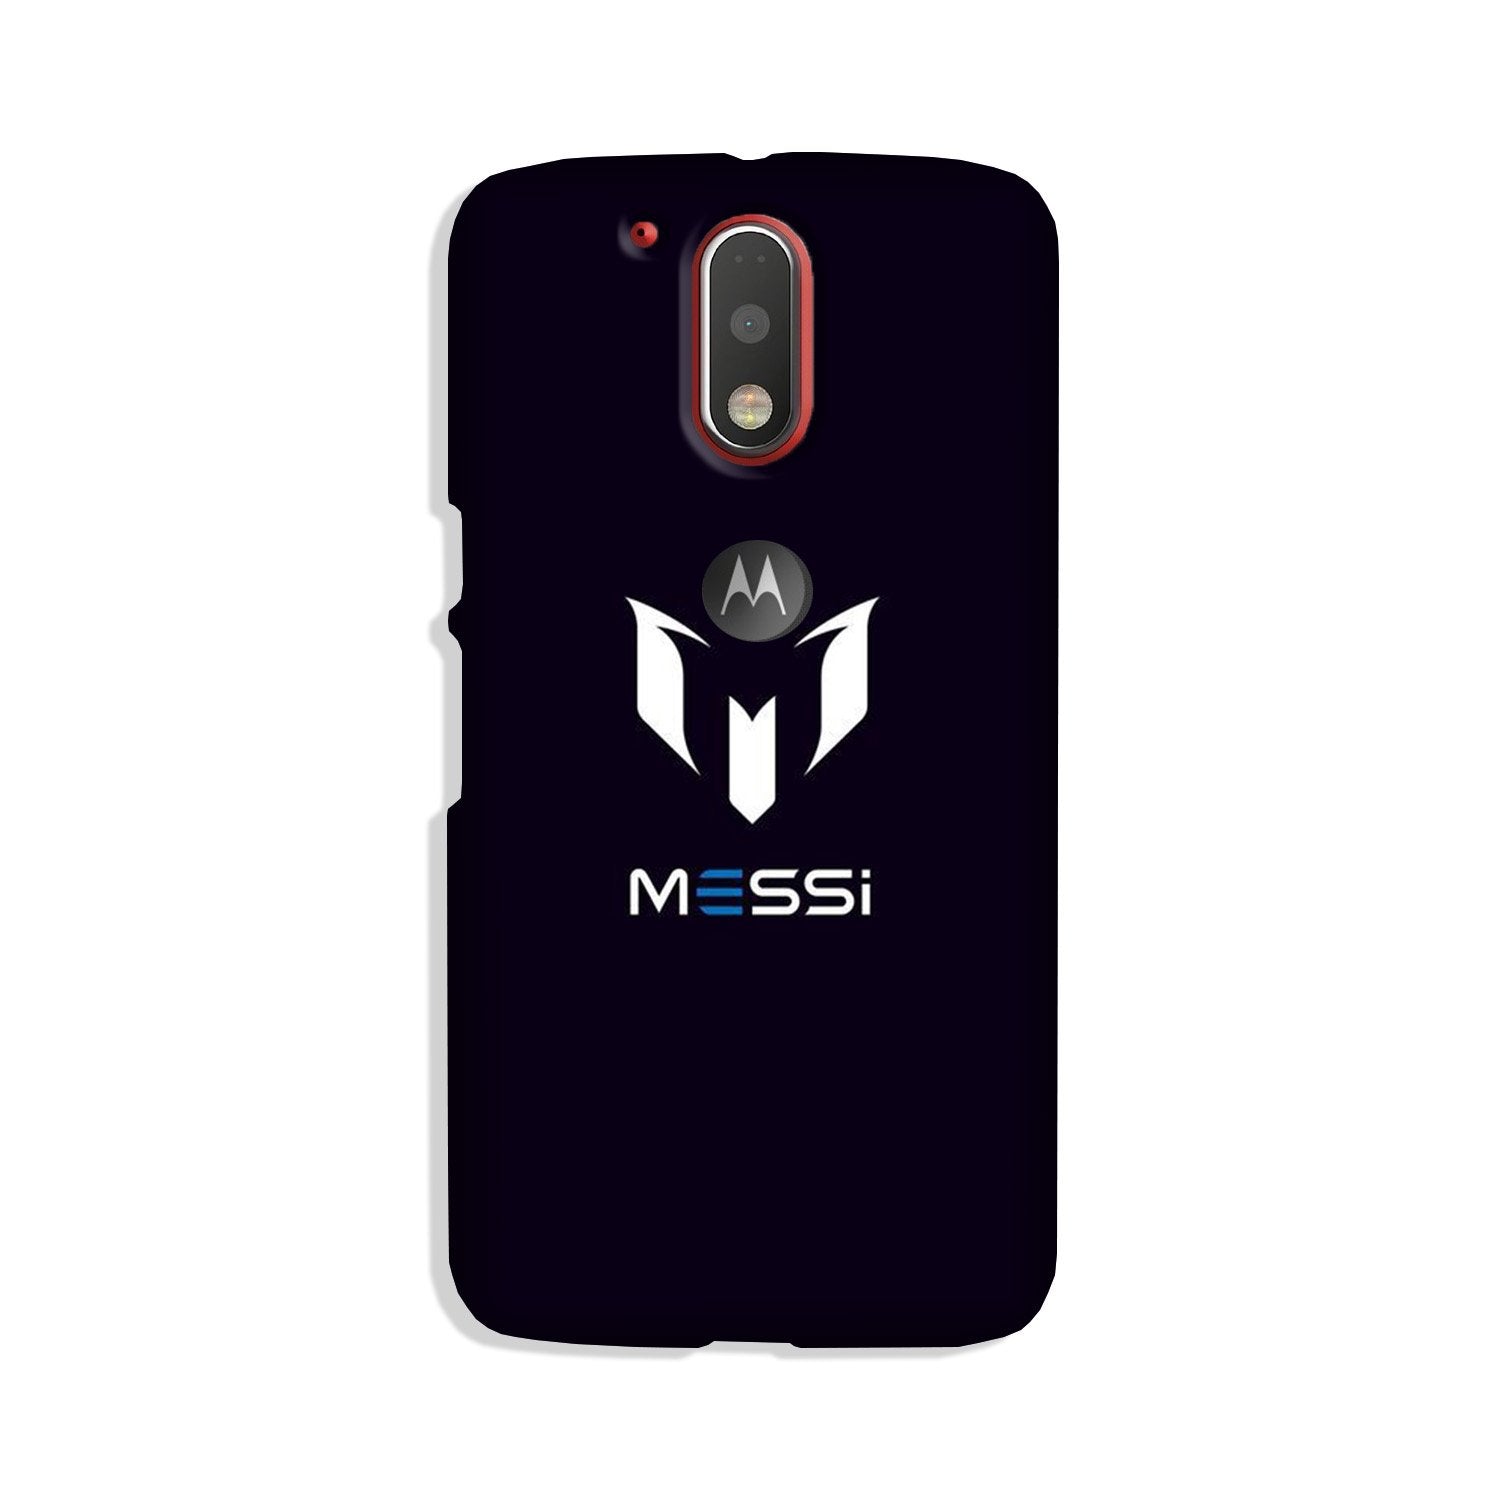 Messi Case for Moto G4 Plus(Design - 158)